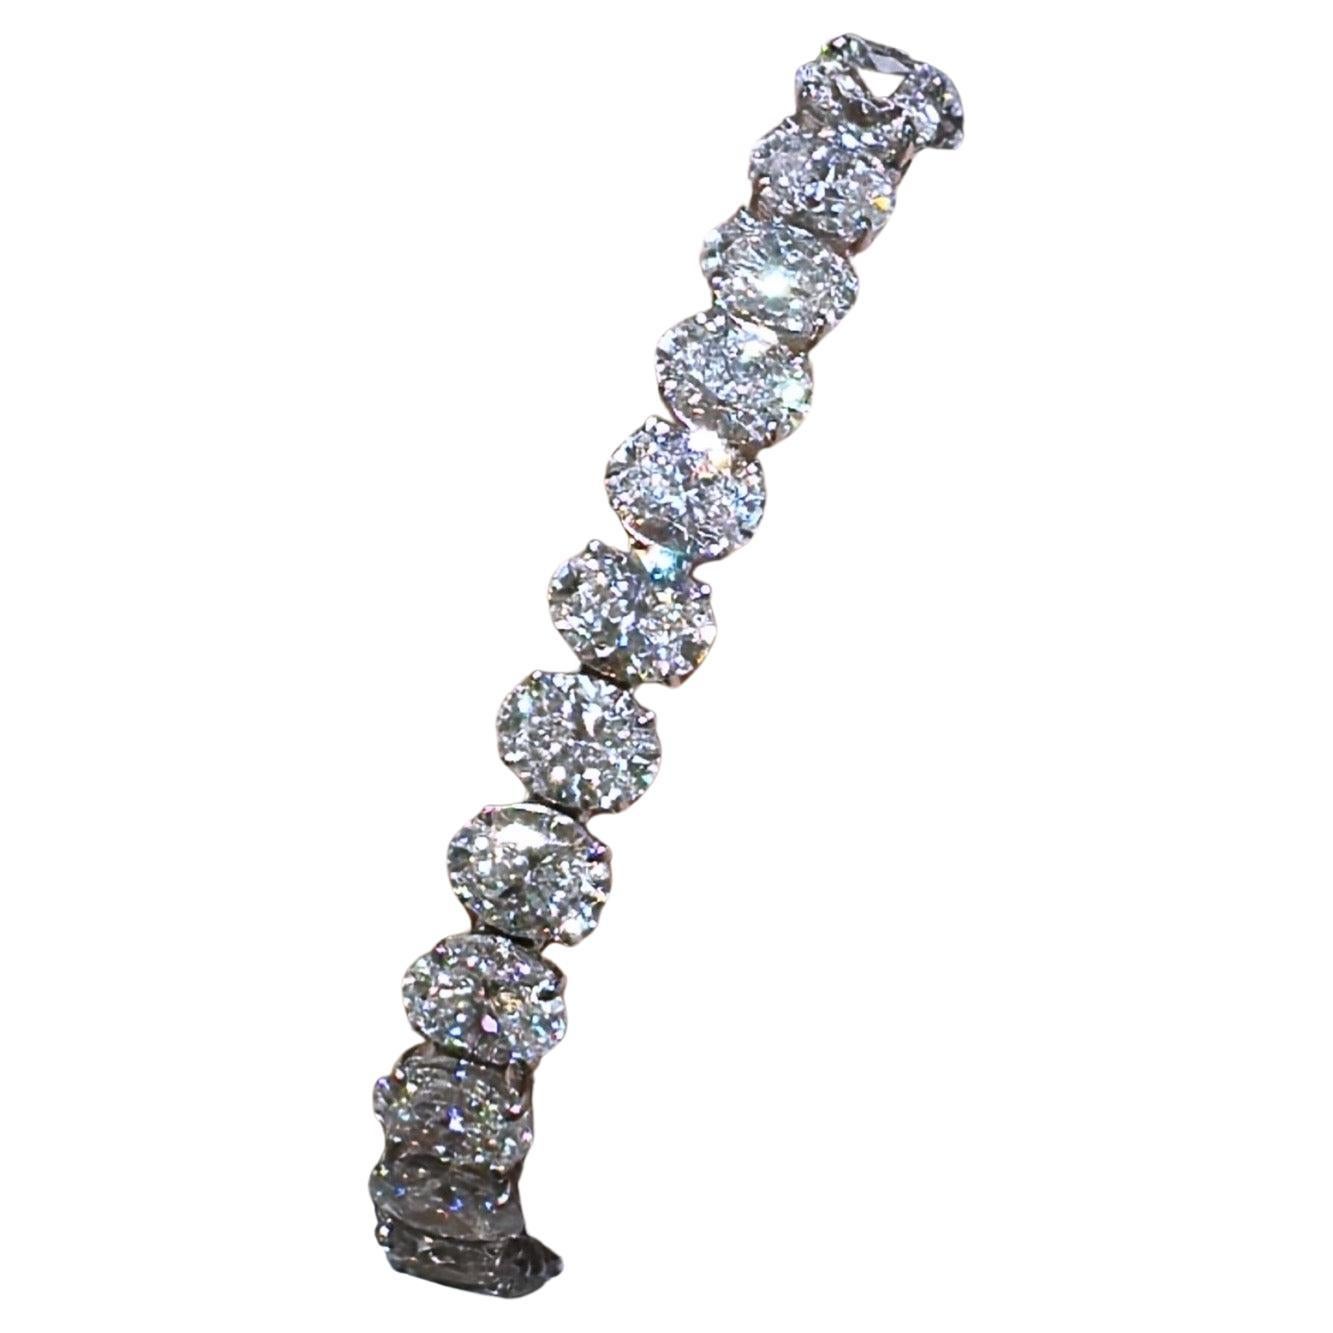 Daniella Design/One SKU : 127778
Le bracelet de tennis riviera line en diamant taille ovale est absolument incroyable, réalisé en platine luxueux et composé de 33 diamants taille ovale, chaque pierre étant certifiée GIA à 23,19 carats ! Trueing pour